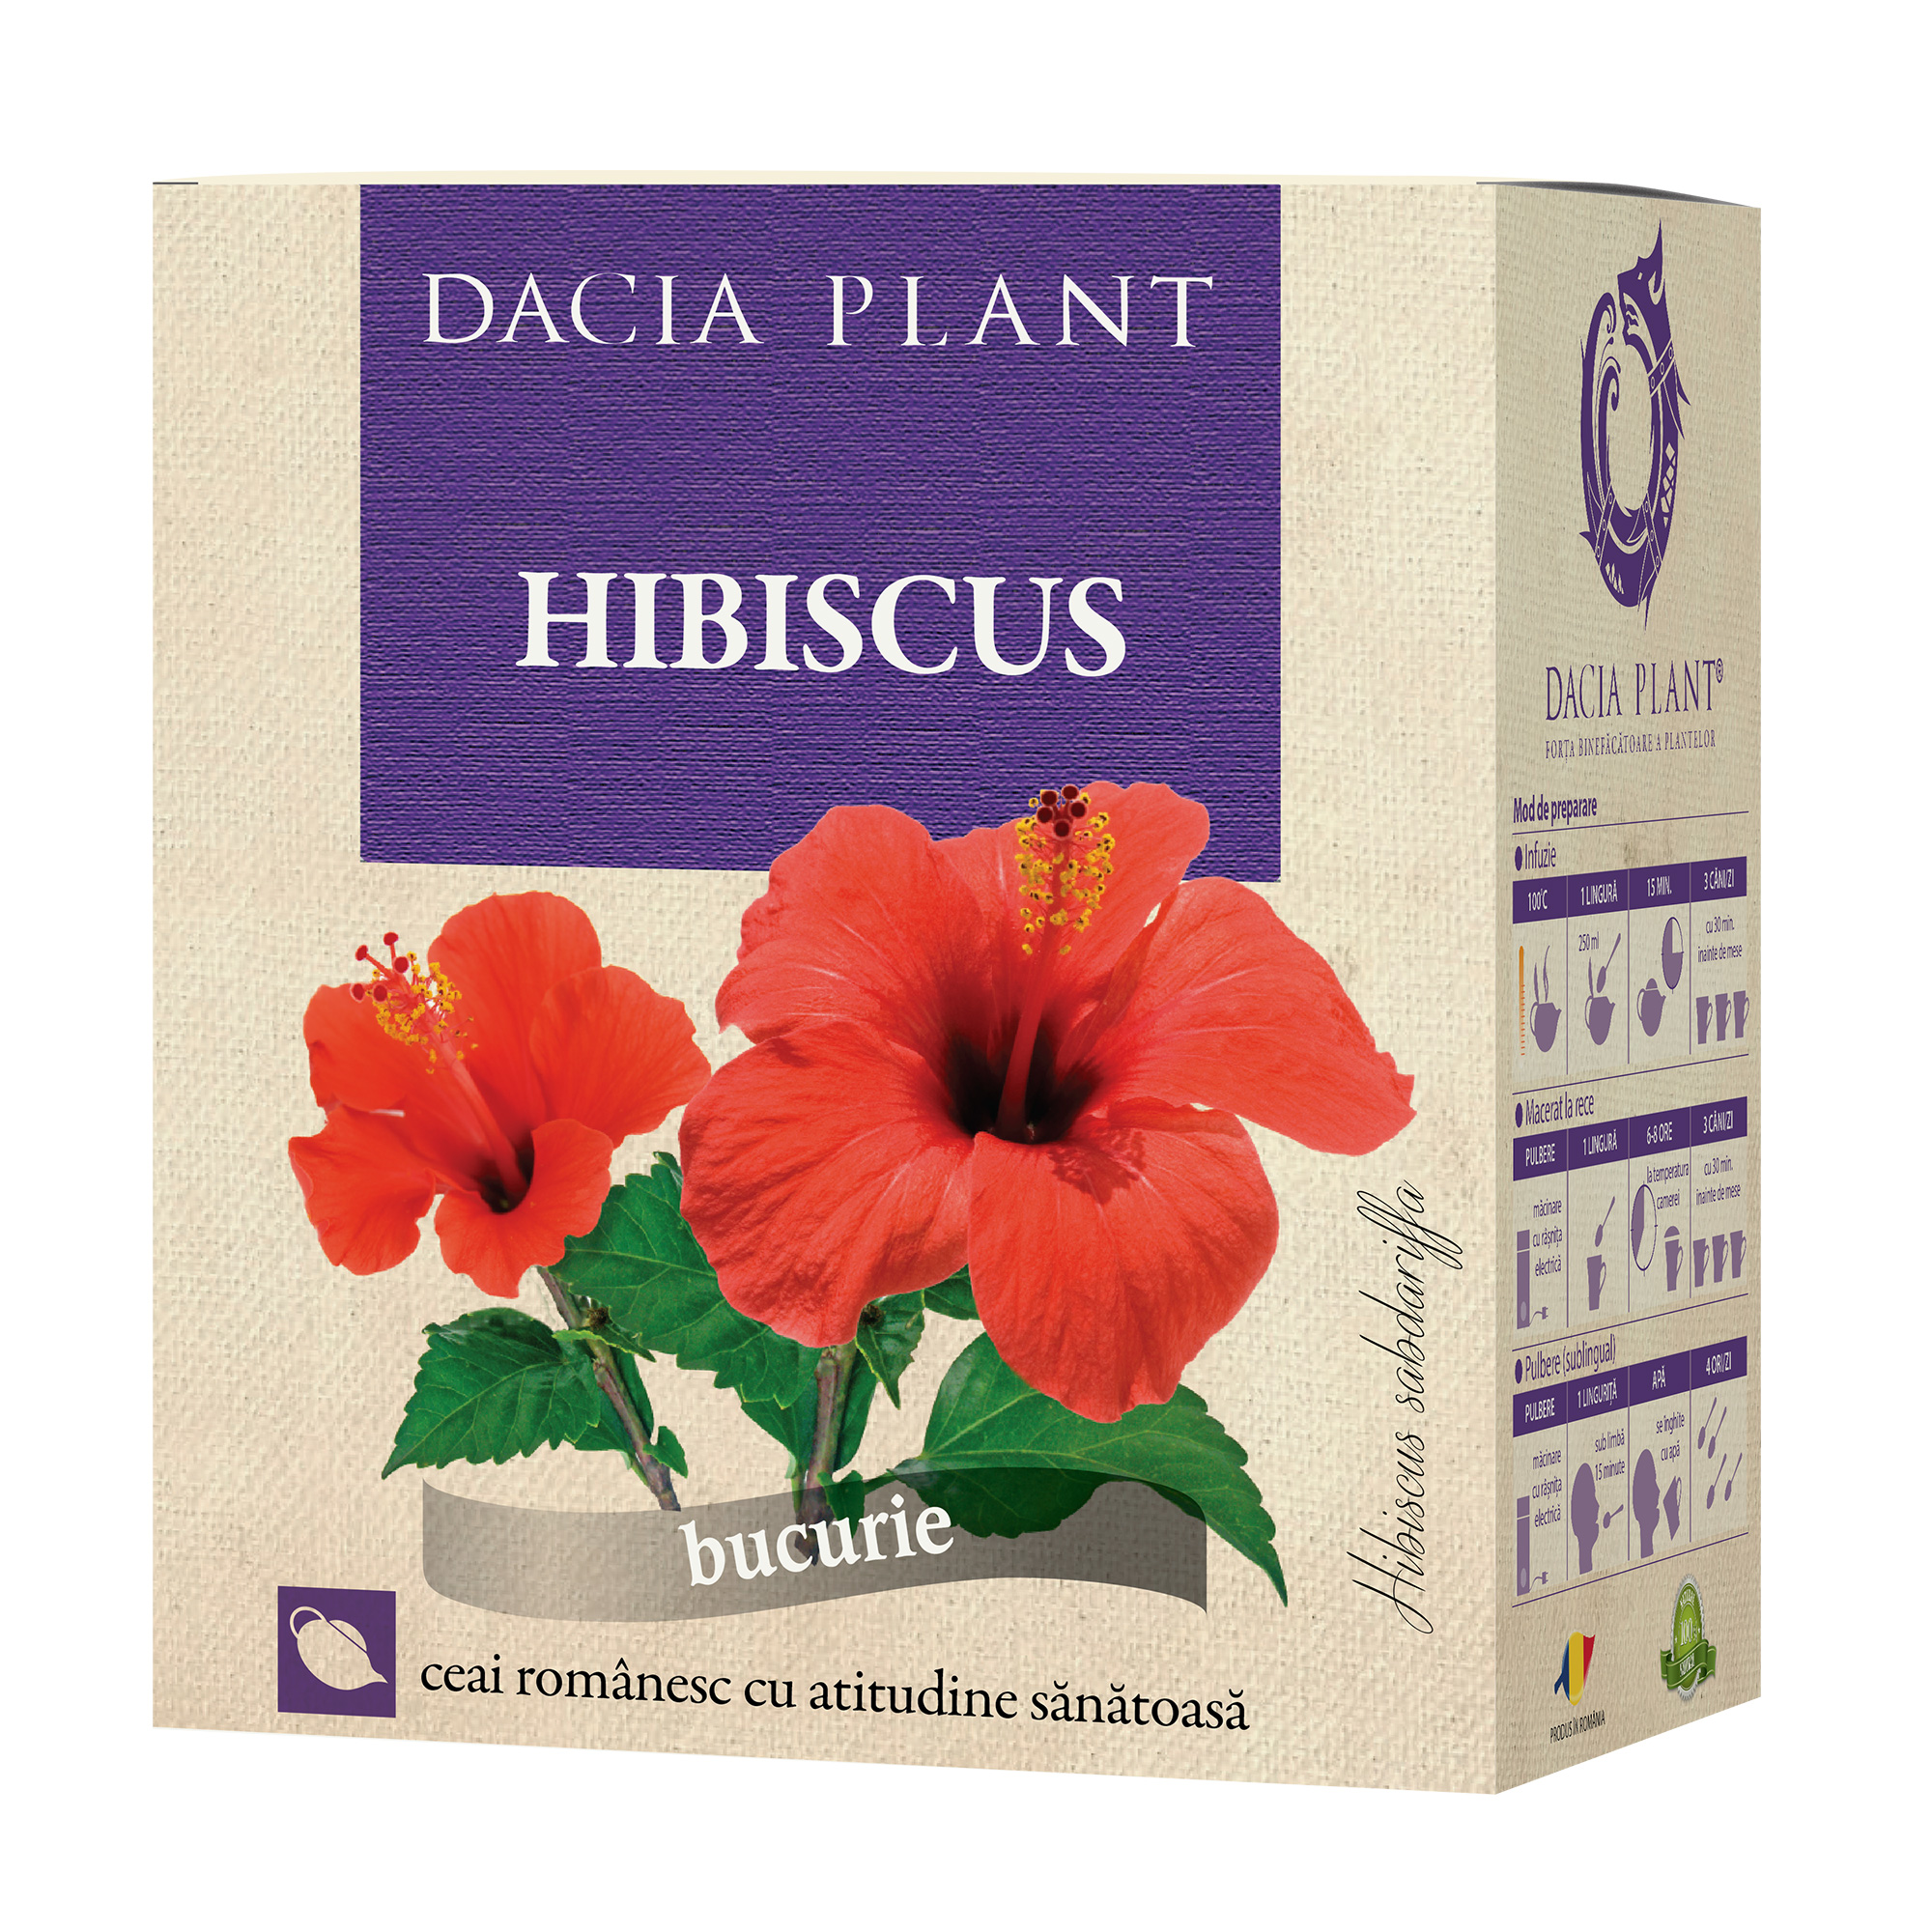 Ceaiul de hibiscus. Efecte si beneficii - defectauto.ro